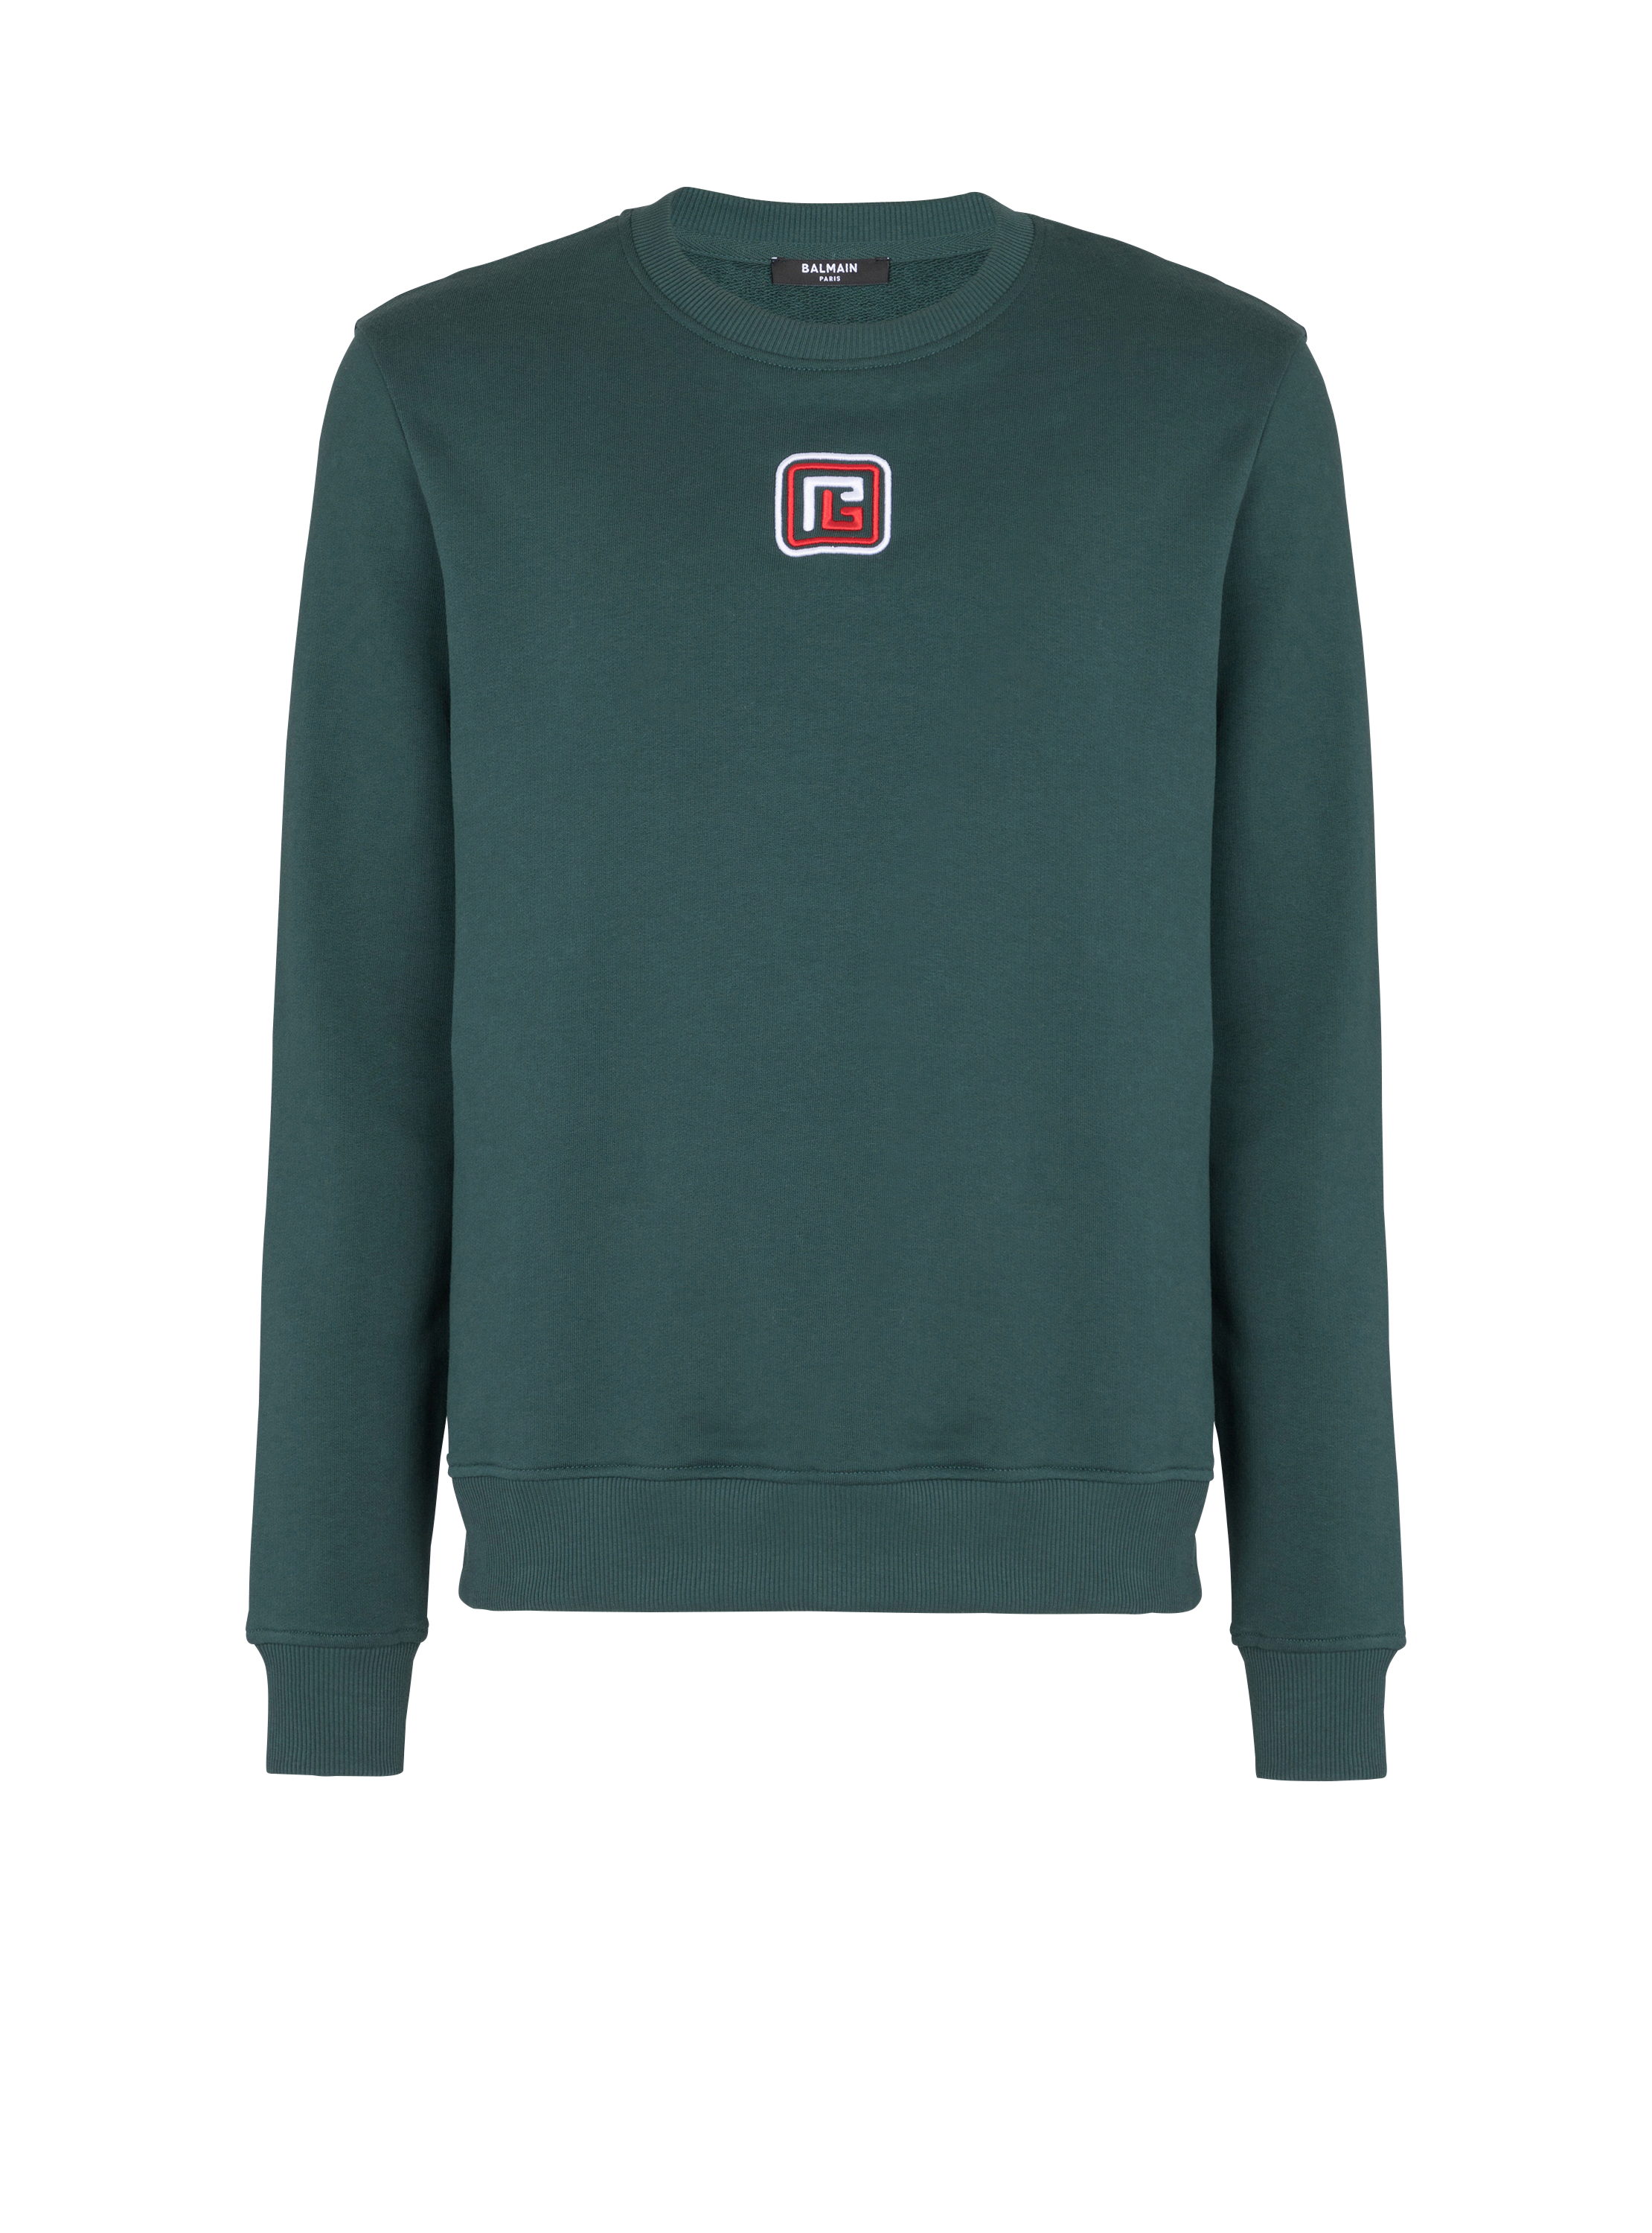 PB sweatshirt green - |